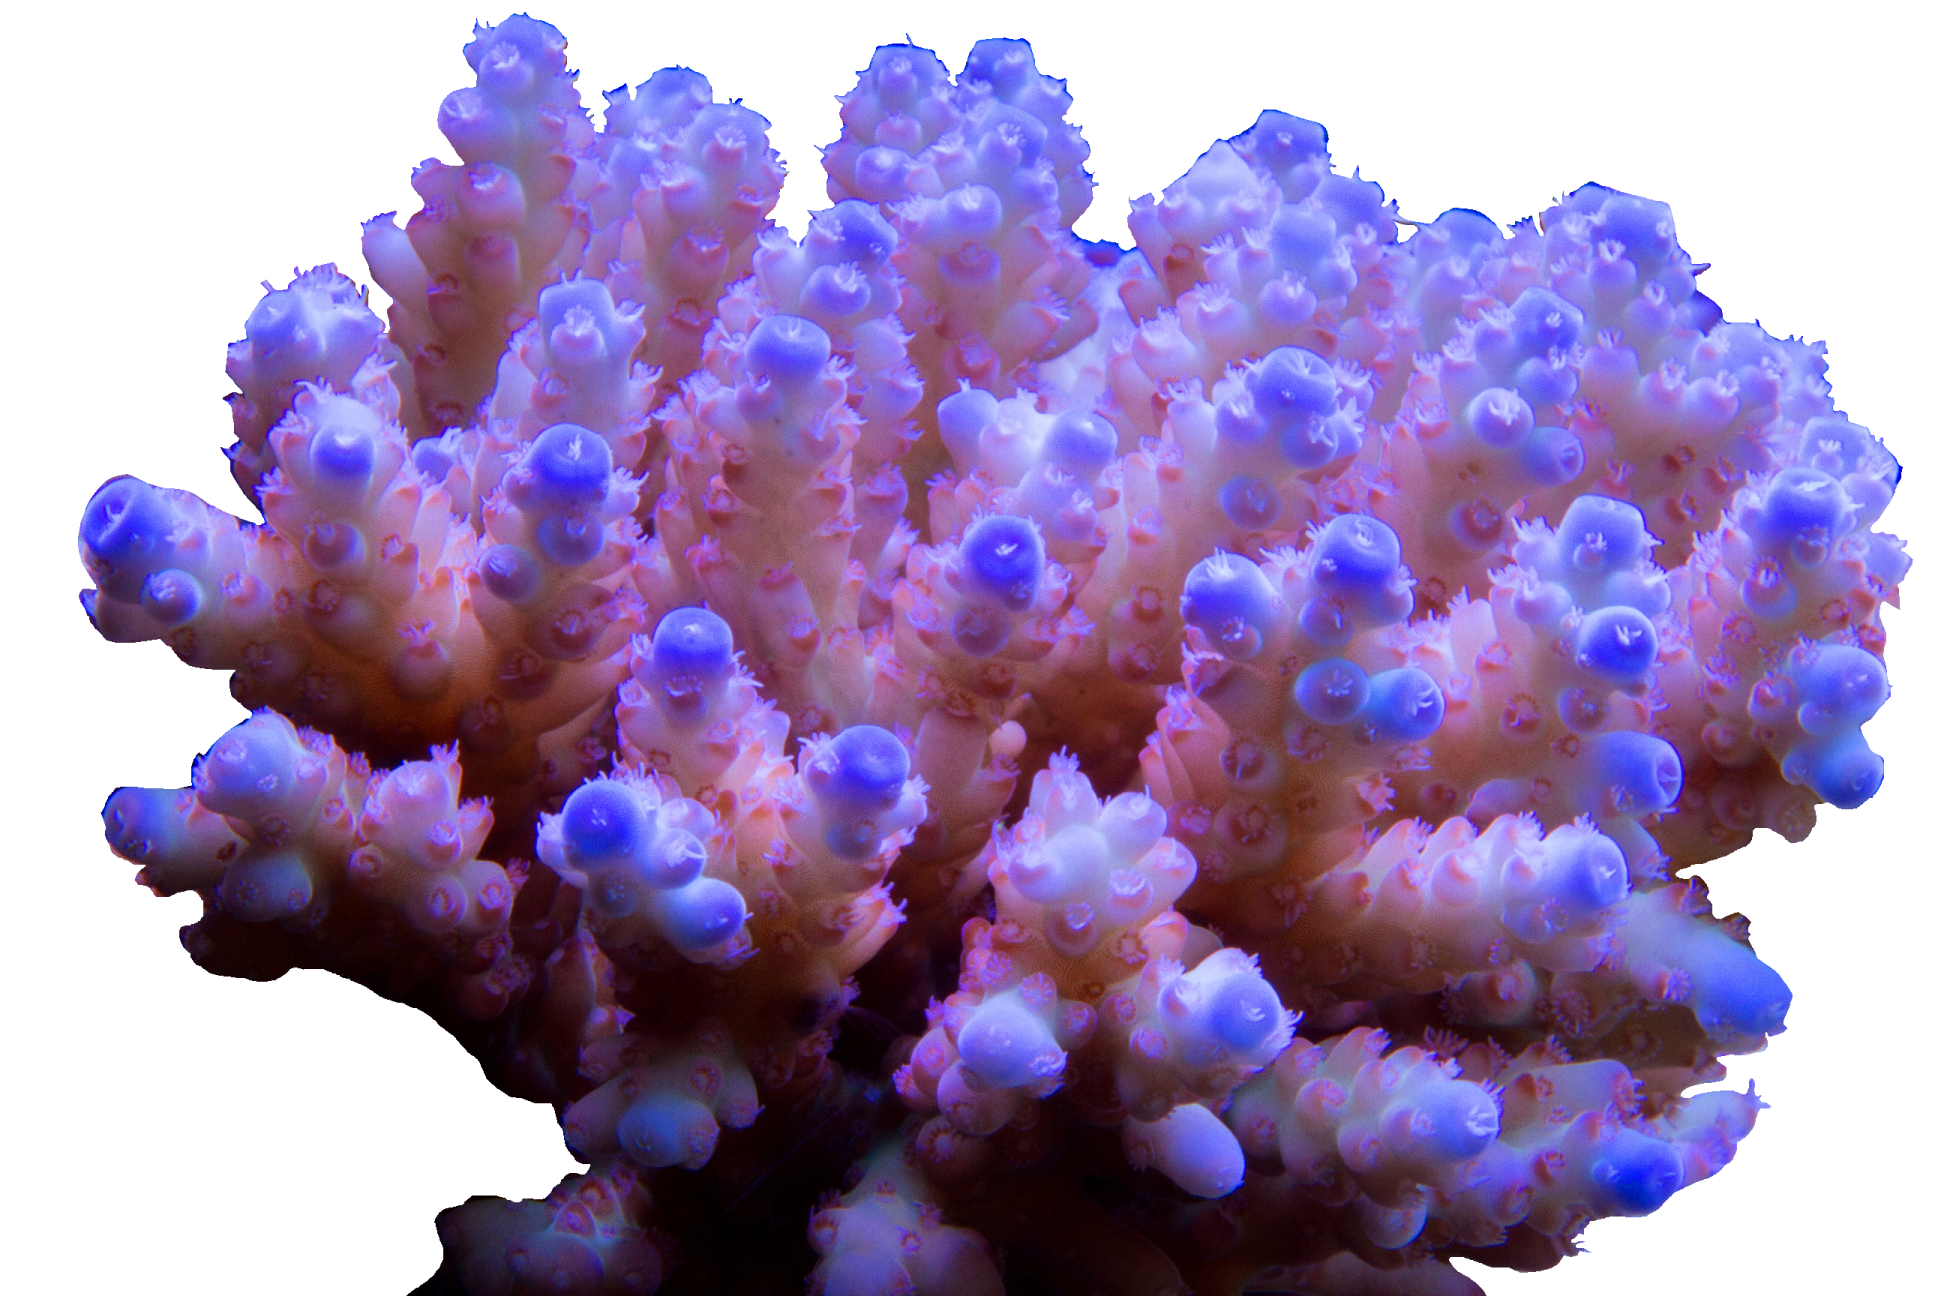 Твердые водоросли. Акропора коралл. Морские кораллы зоантусы. Leiopathes коралл. Коралловые полипы и водоросли.